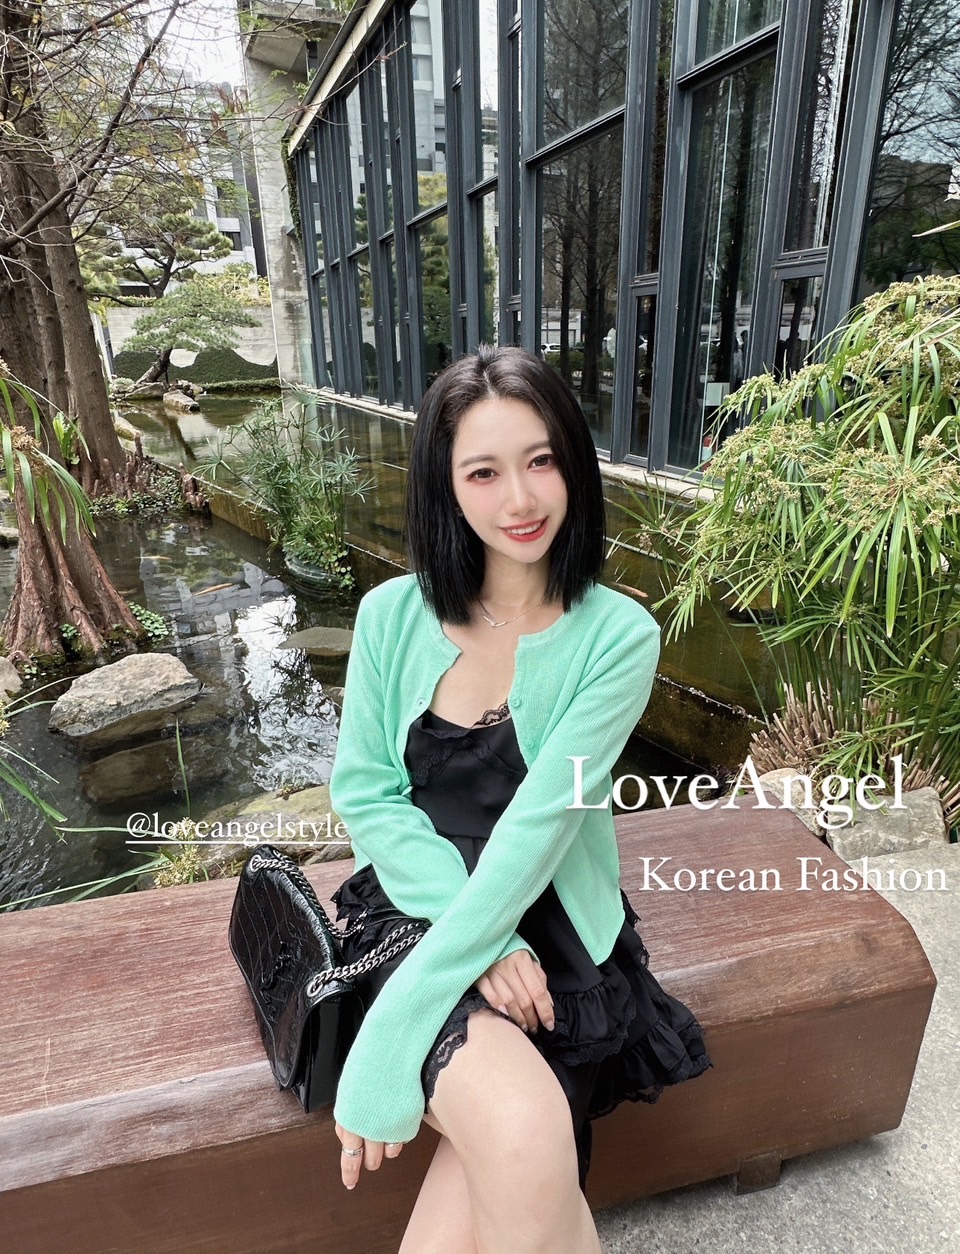 LoveAngel韓國精品服飾